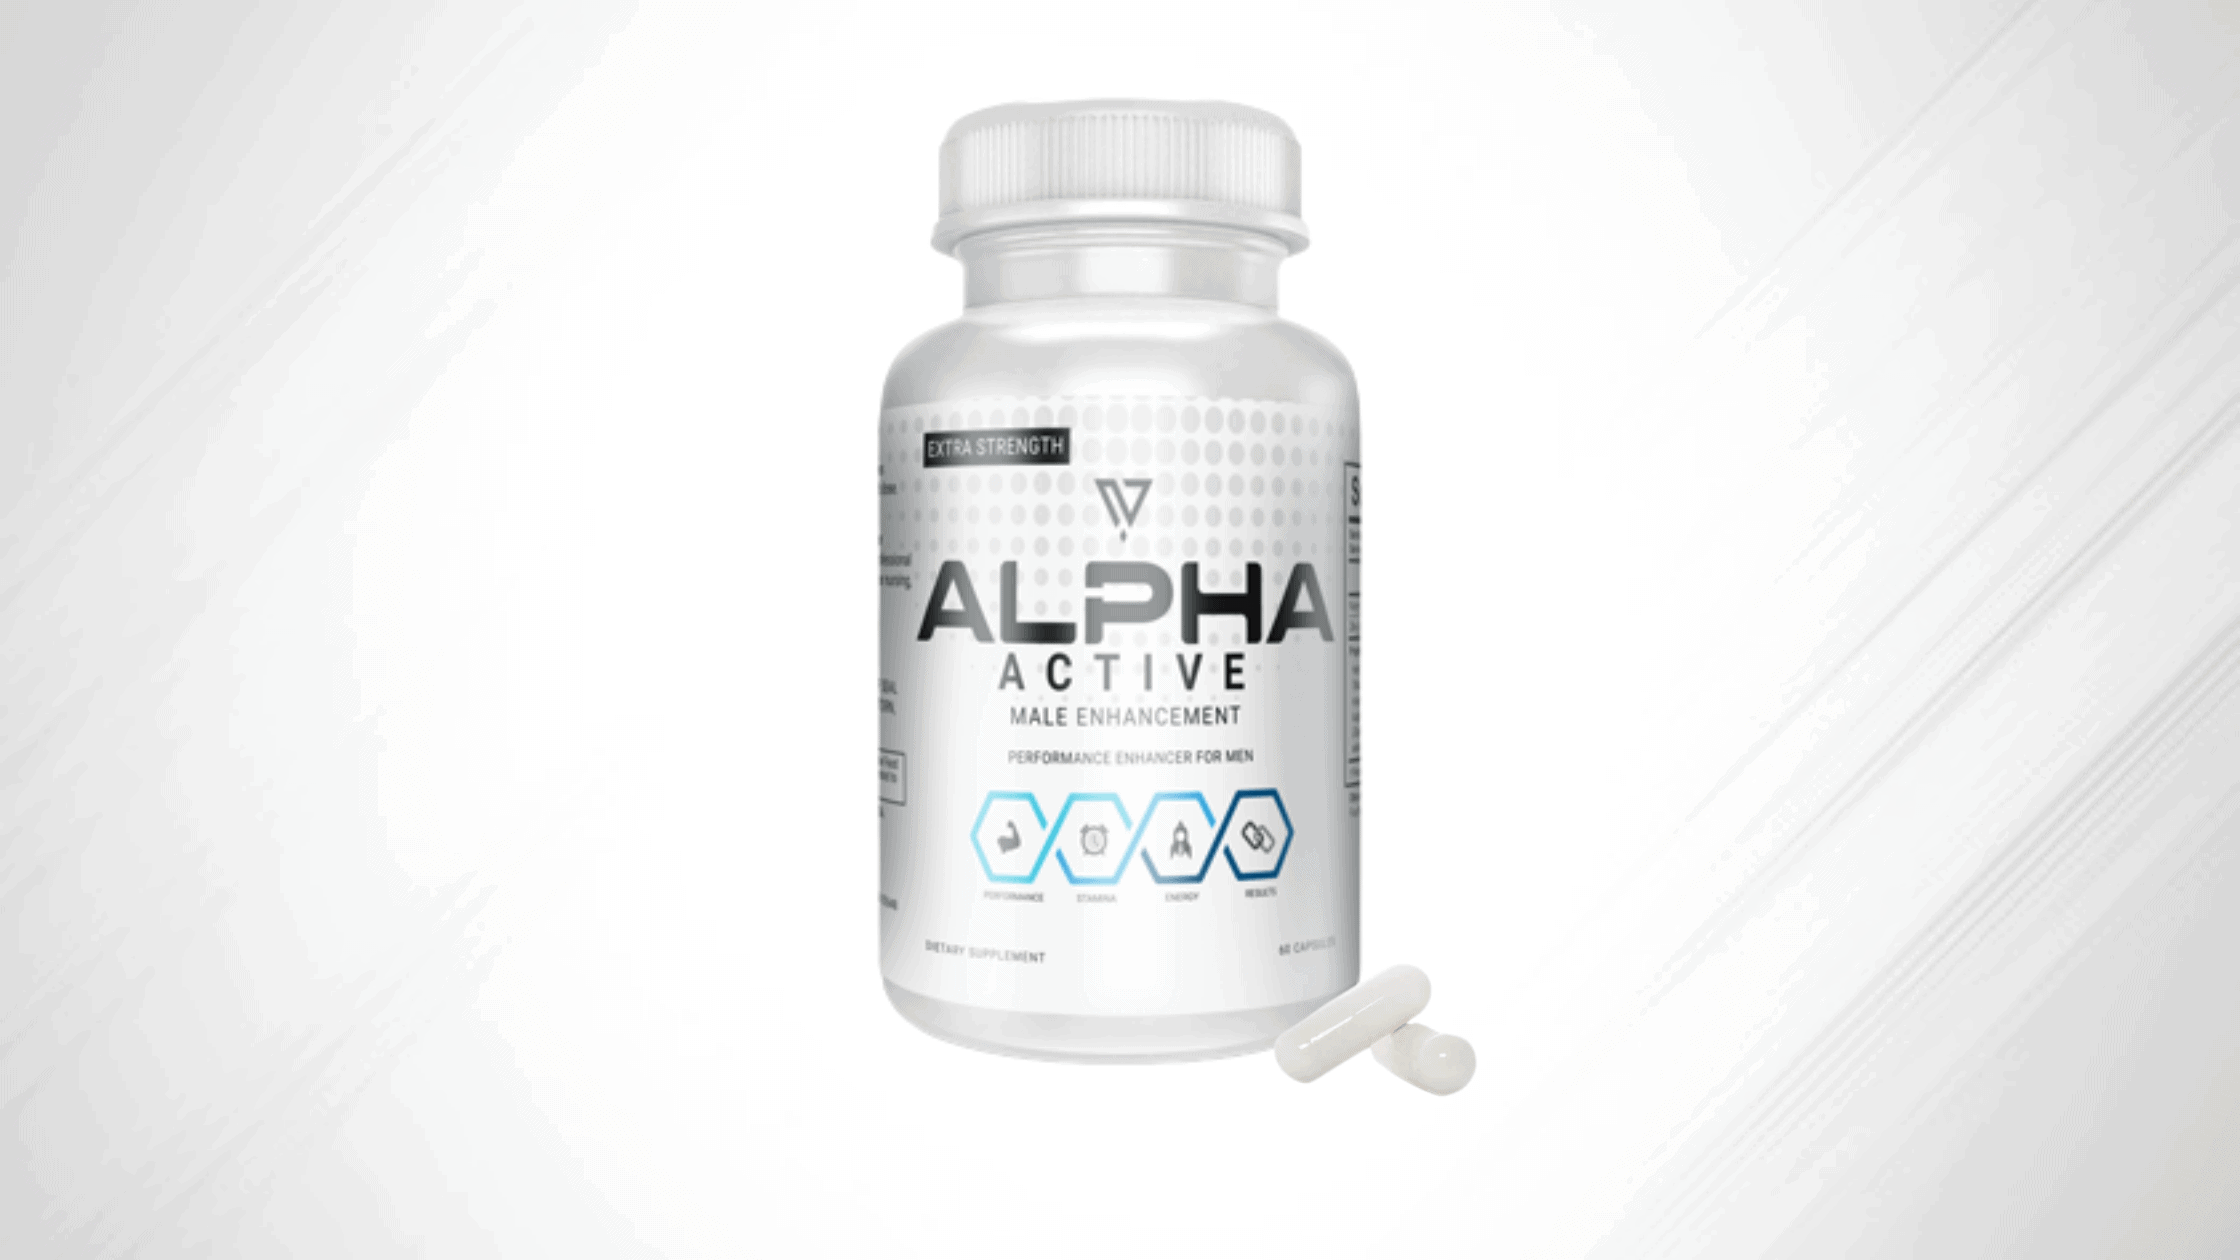 Alpha Active Male Enhancement Supplement